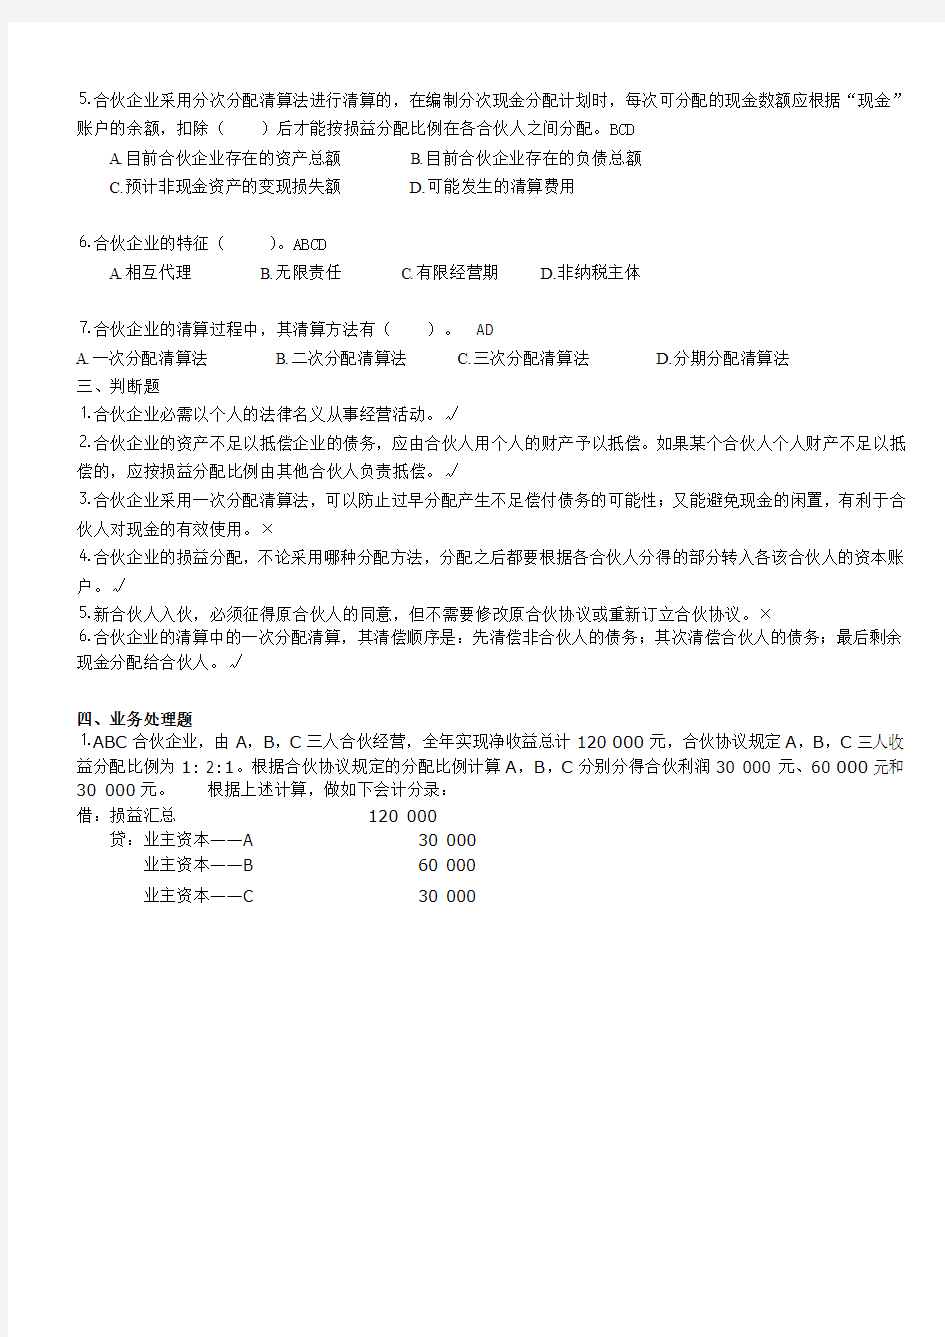 合伙企业会计练习题(2012.04)